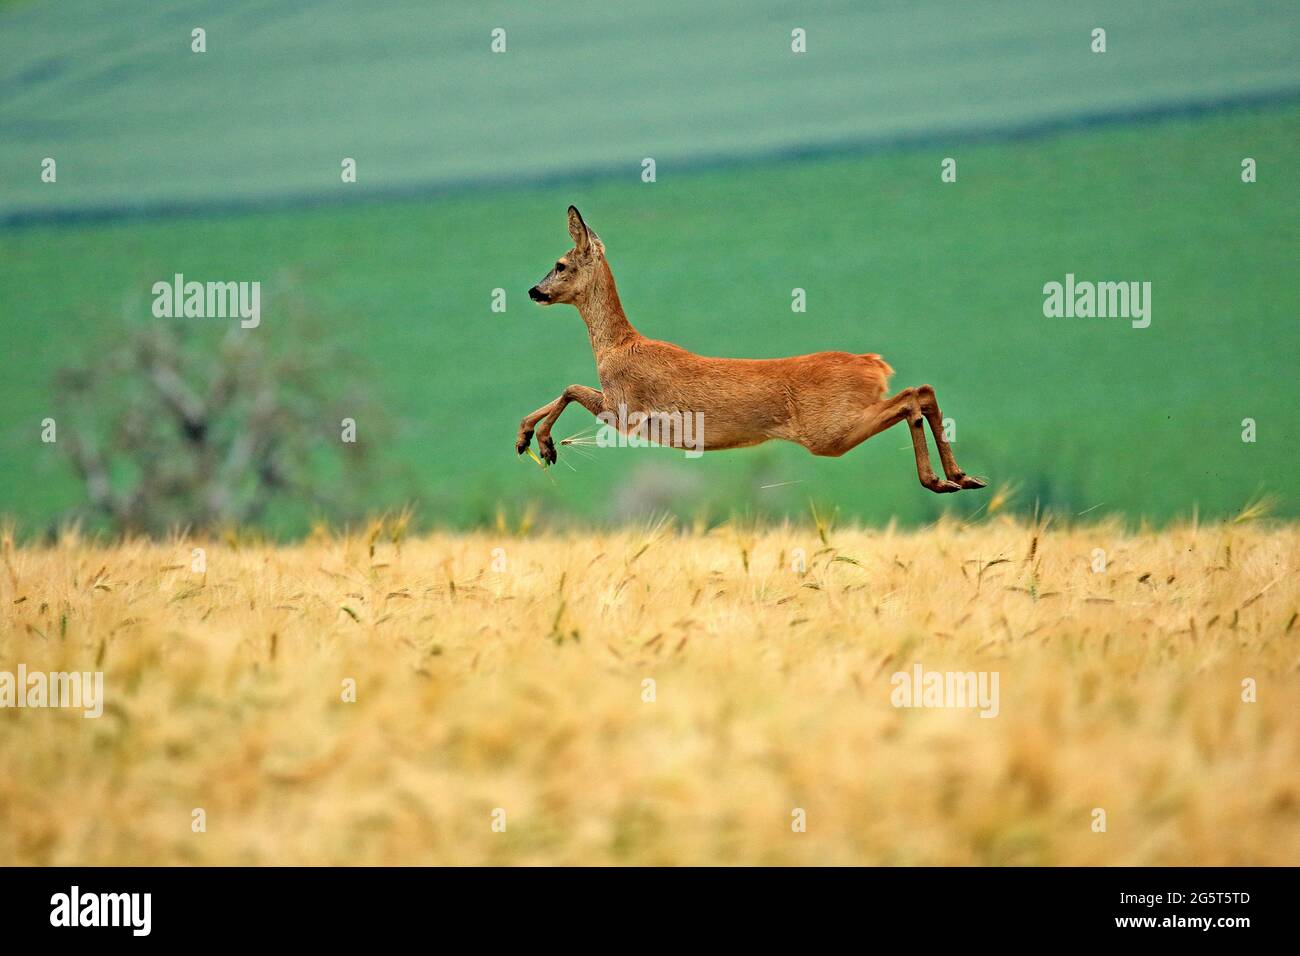 roe deer (Capreolus capreolus), fleeing female in a grain field in summer, Germany Stock Photo